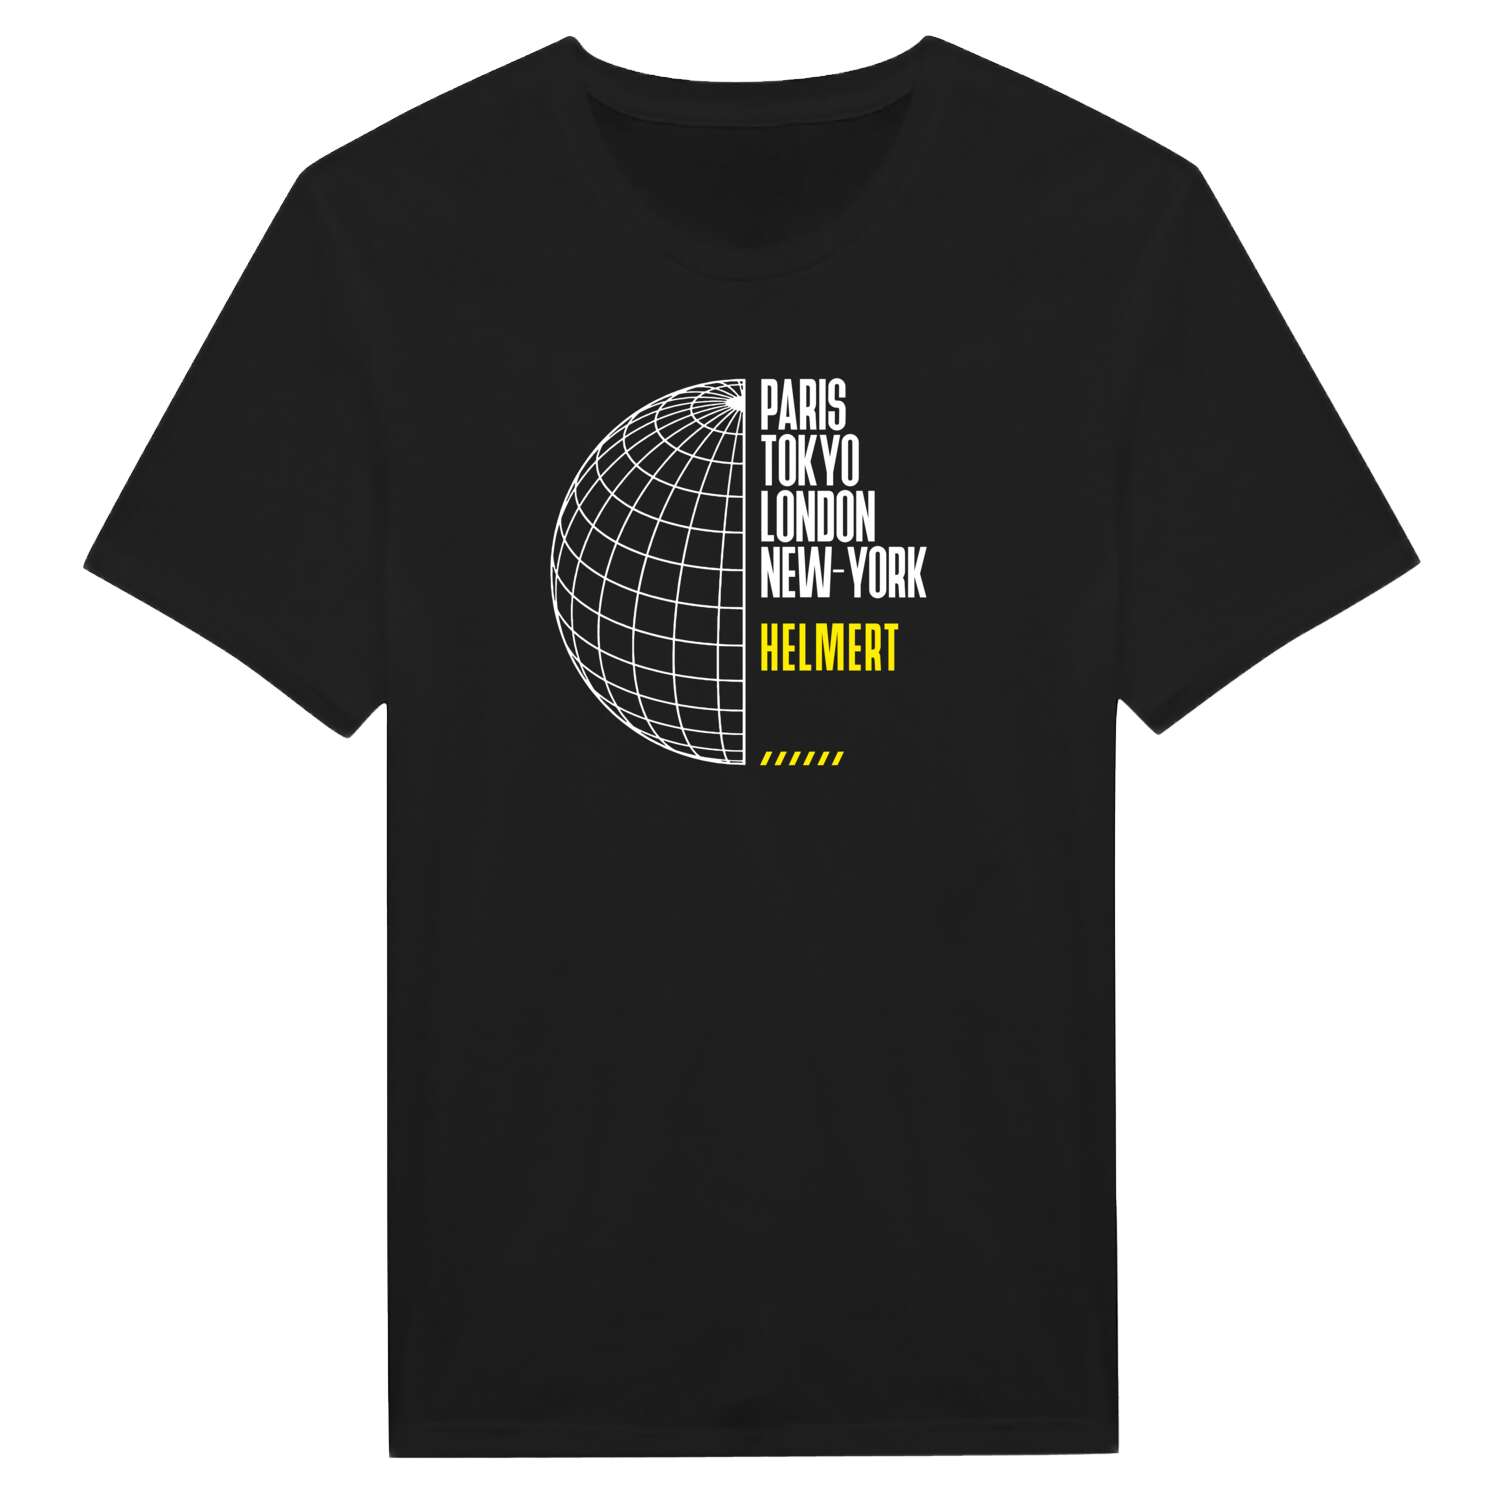 Helmert T-Shirt »Paris Tokyo London«